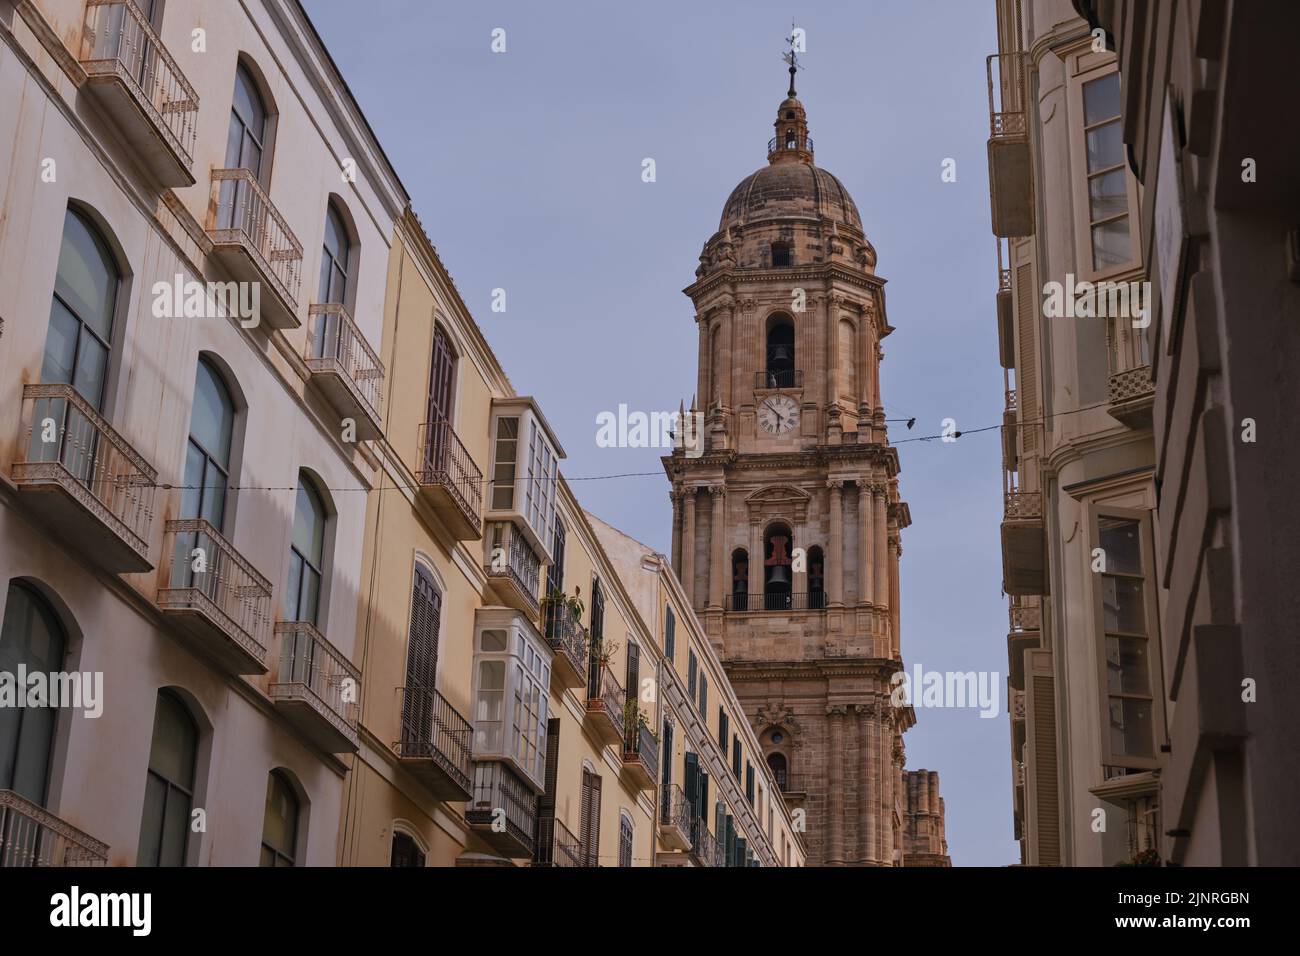 Malaga, Spagna - 19 maggio 2022: La Cattedrale di Malaga è una chiesa cattolica romana nella città di Malaga in Andalusia, nel sud della Spagna Foto Stock